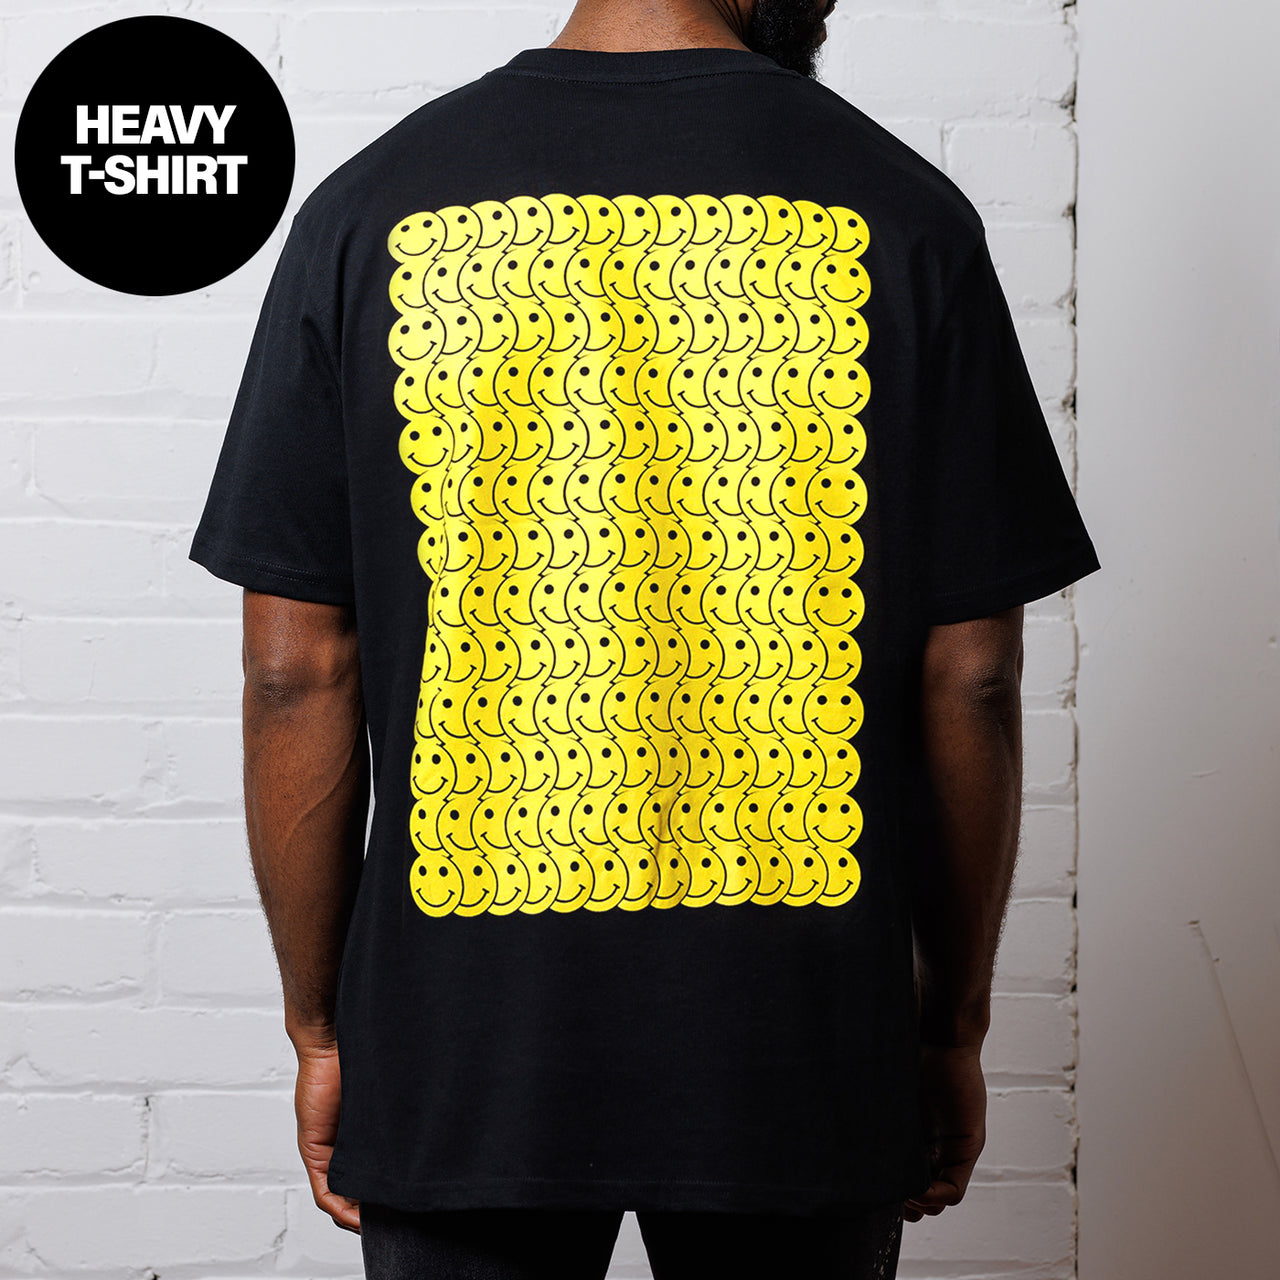 Smiley Trail - Heavy Tshirt - Black